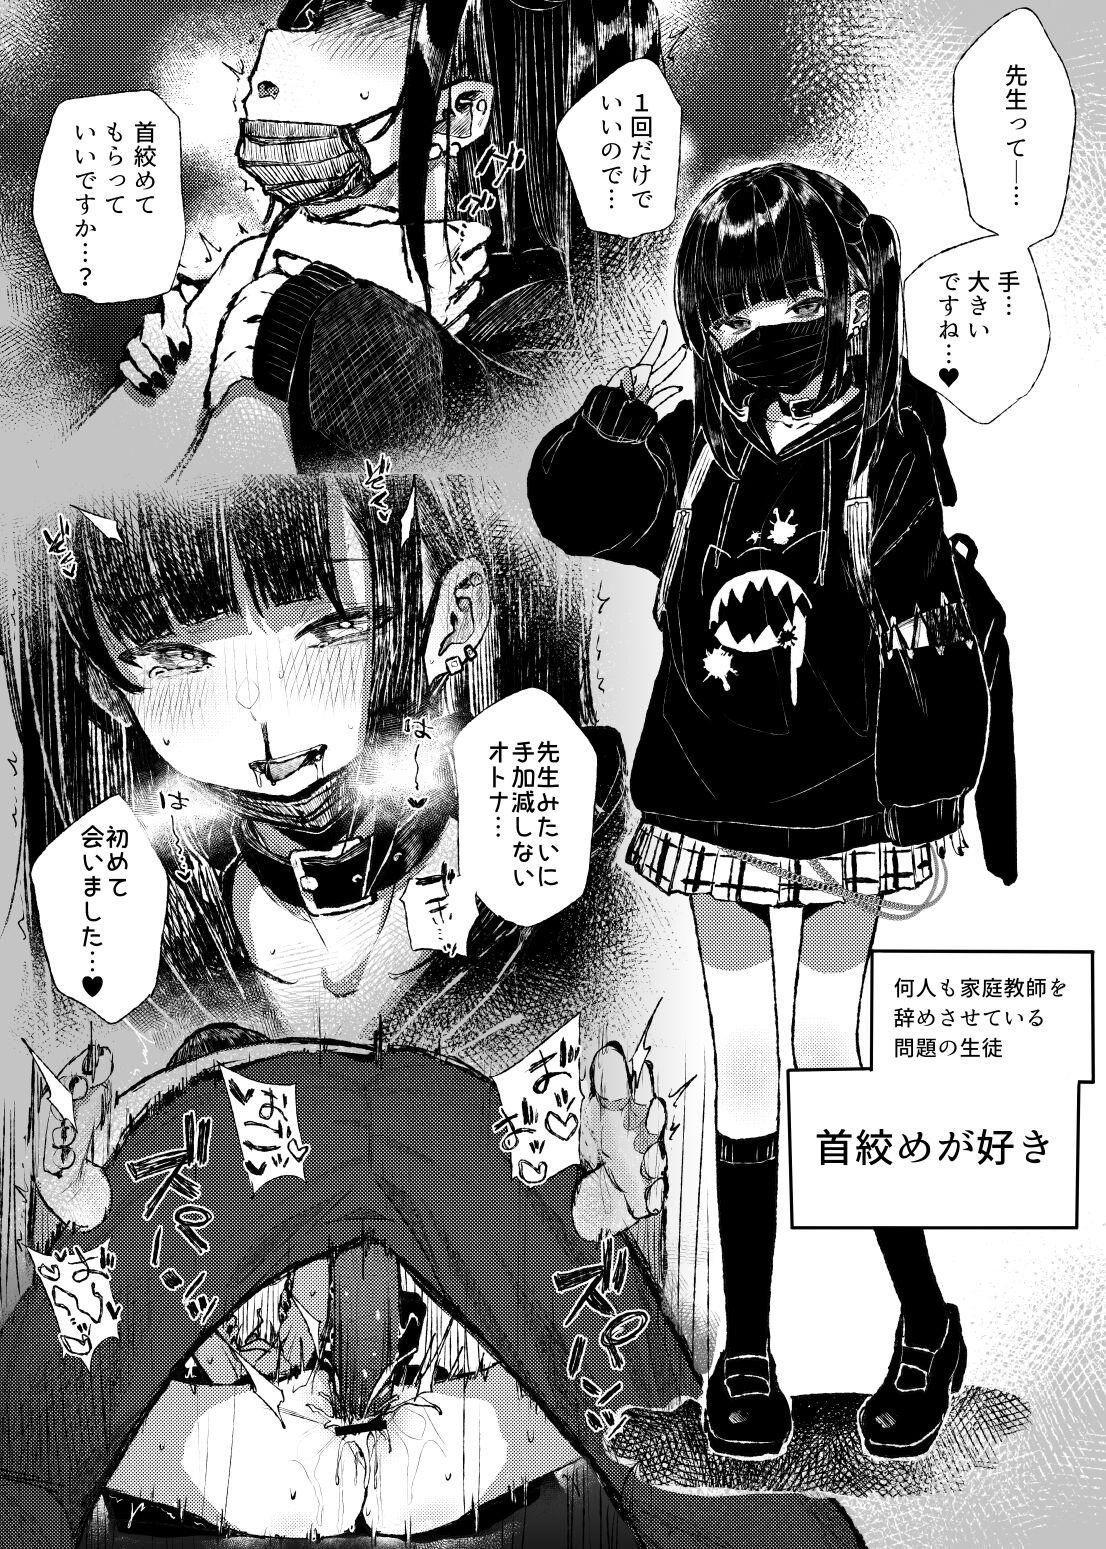 Hot Wife Kubishime Jiraikei Shoujo Manga Cut - Picture 1